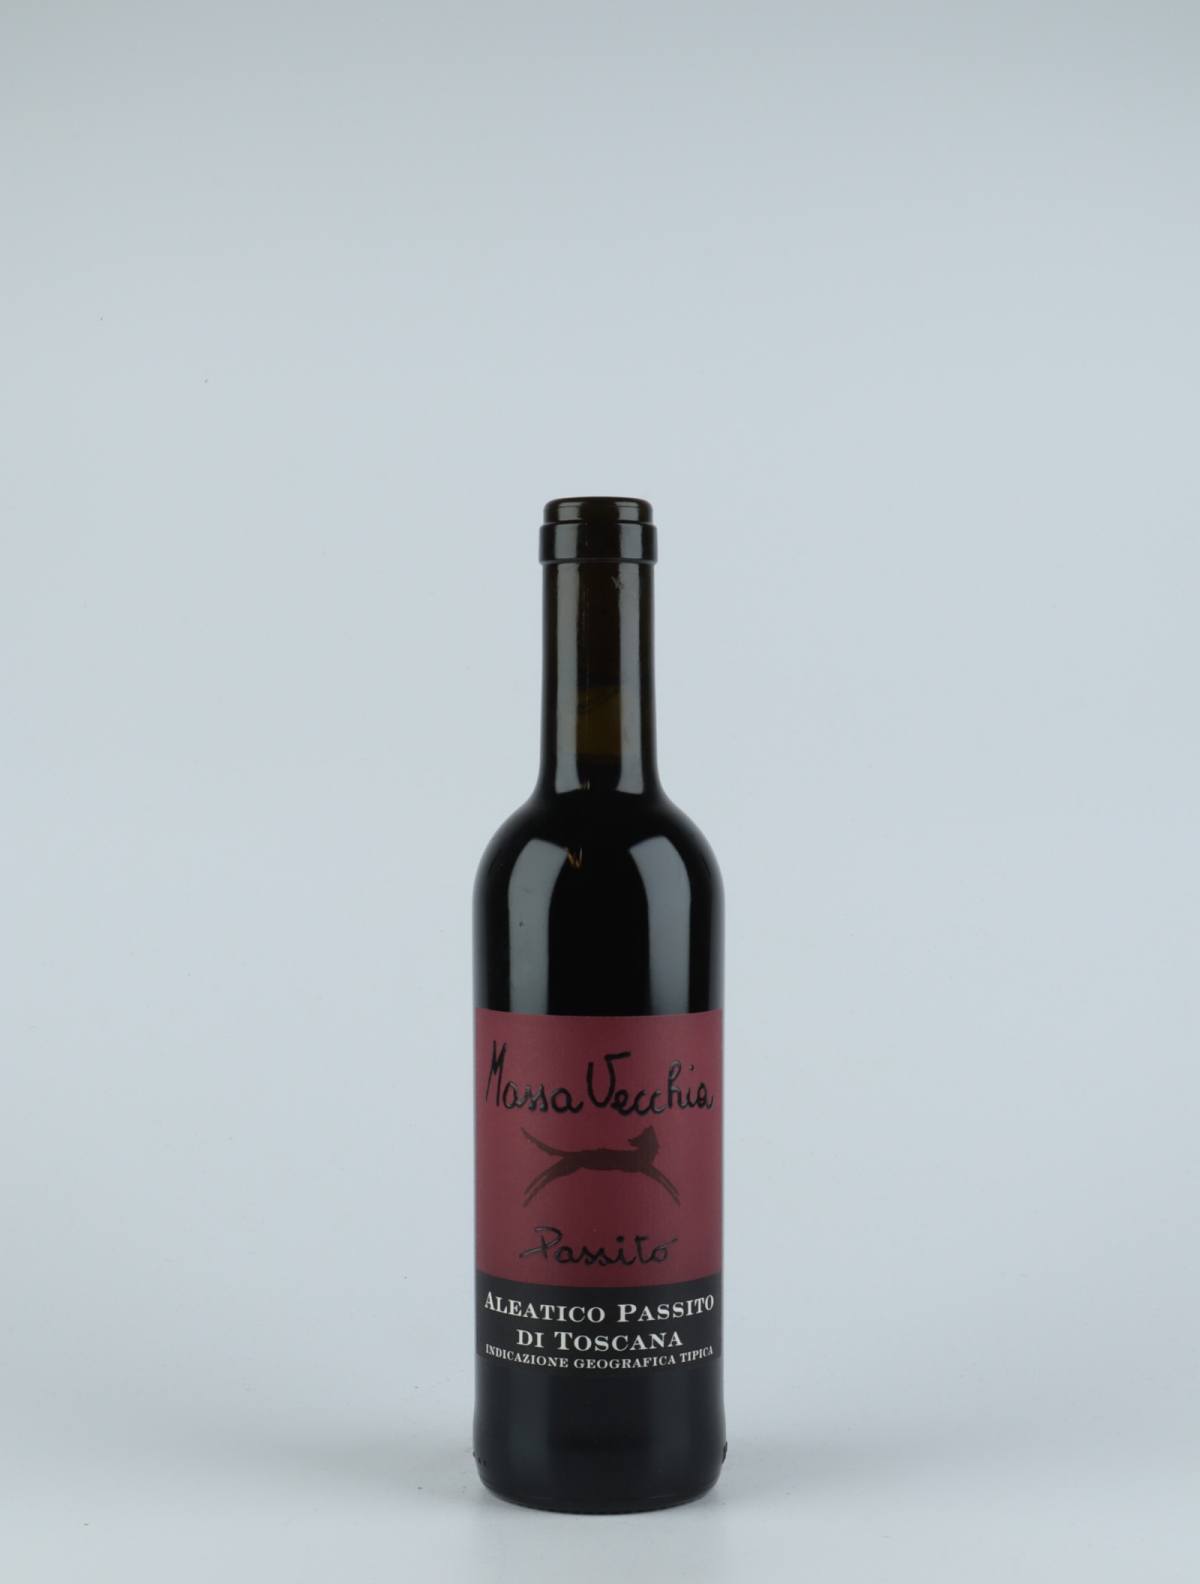 En flaske 2016 Passito Aleatico Sød vin fra Massa Vecchia, Toscana i Italien